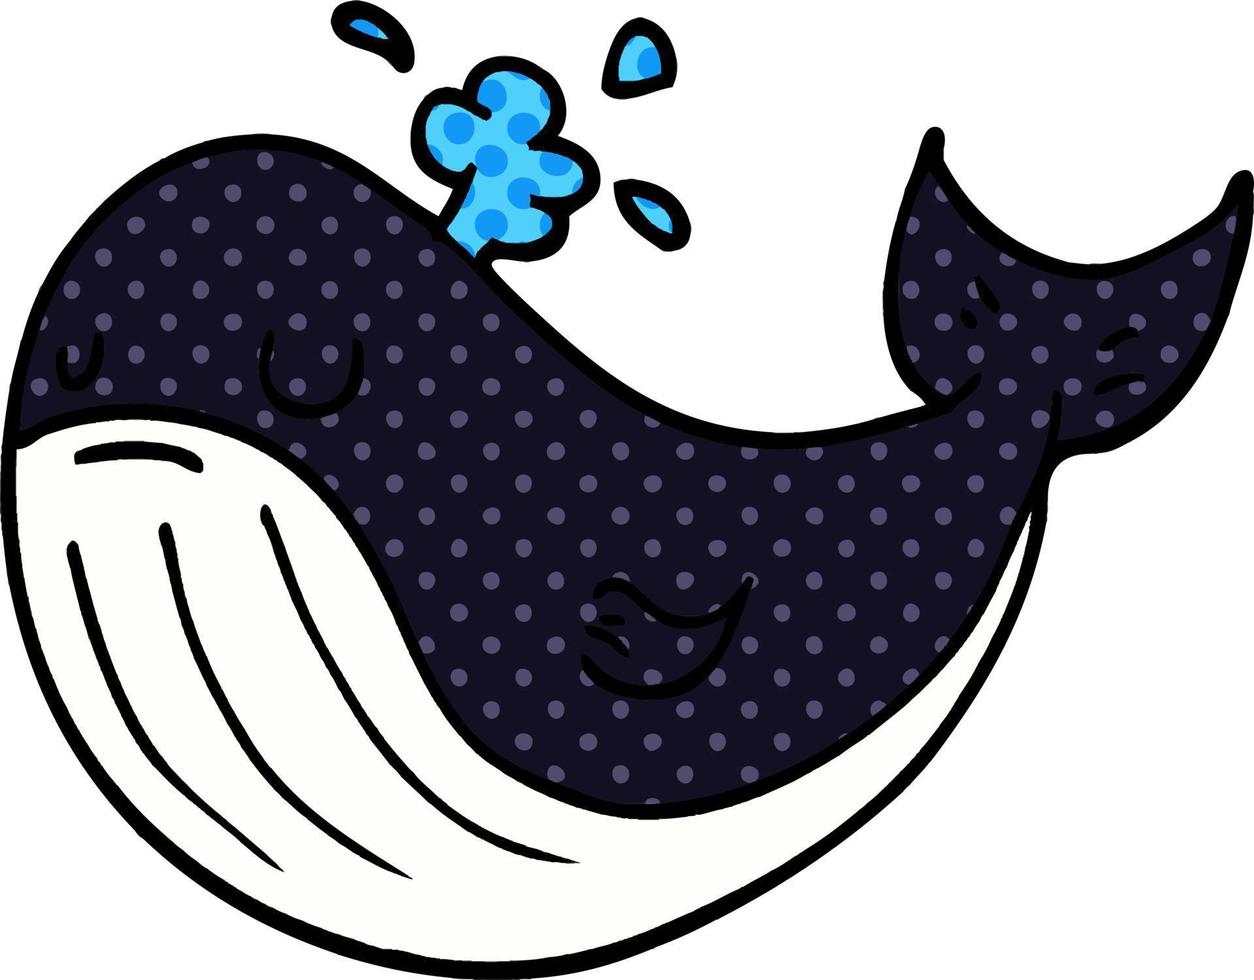 baleia de desenho animado vetor